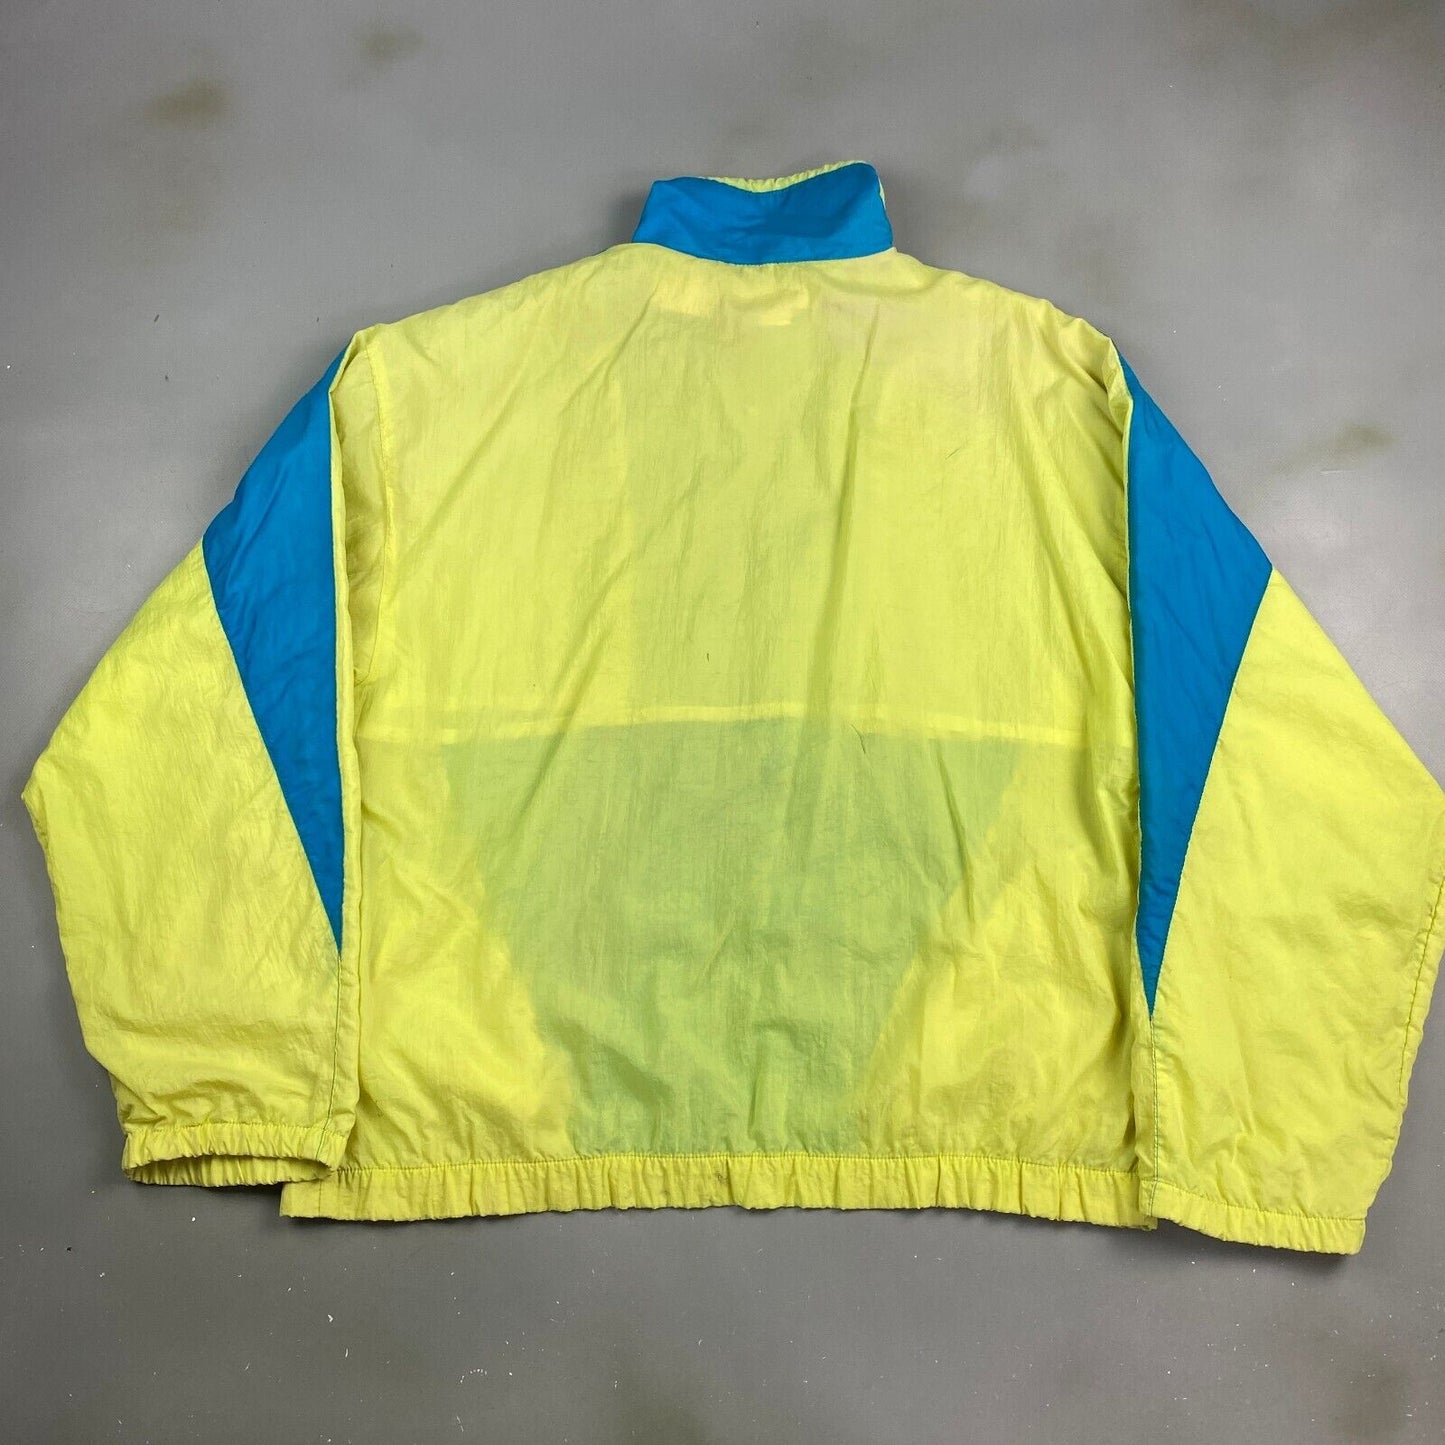 VINTAGE 80s VOIT Tennis Retro Windbreaker Jacket sz XL Adult